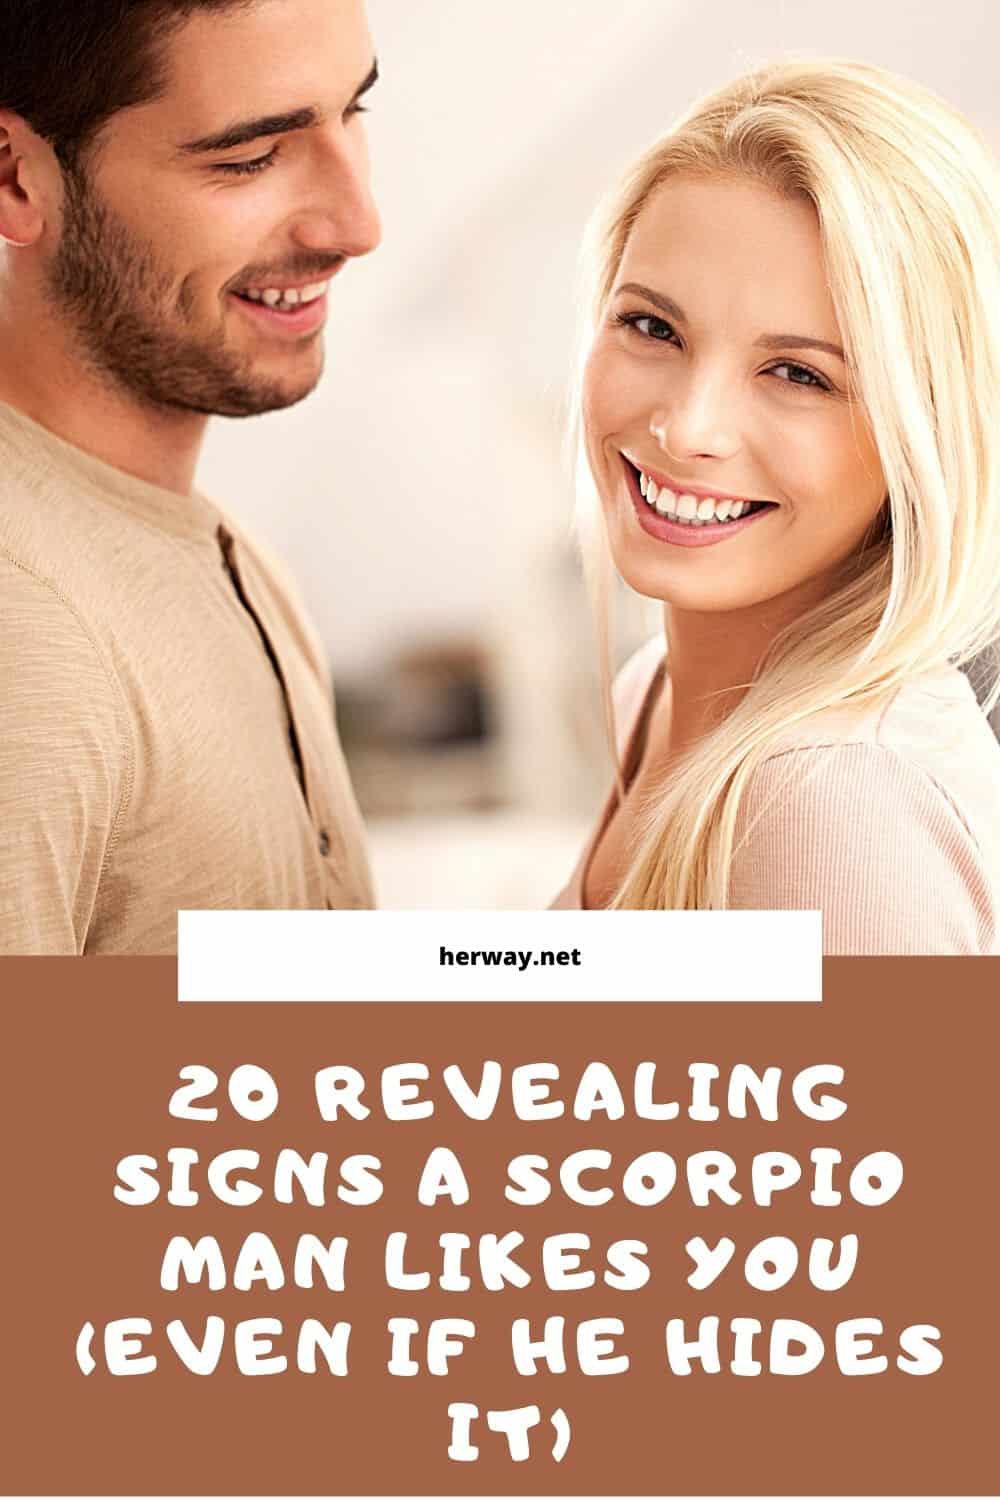 20 segni rivelatori che piaci a uno Scorpione (anche se lo nasconde)